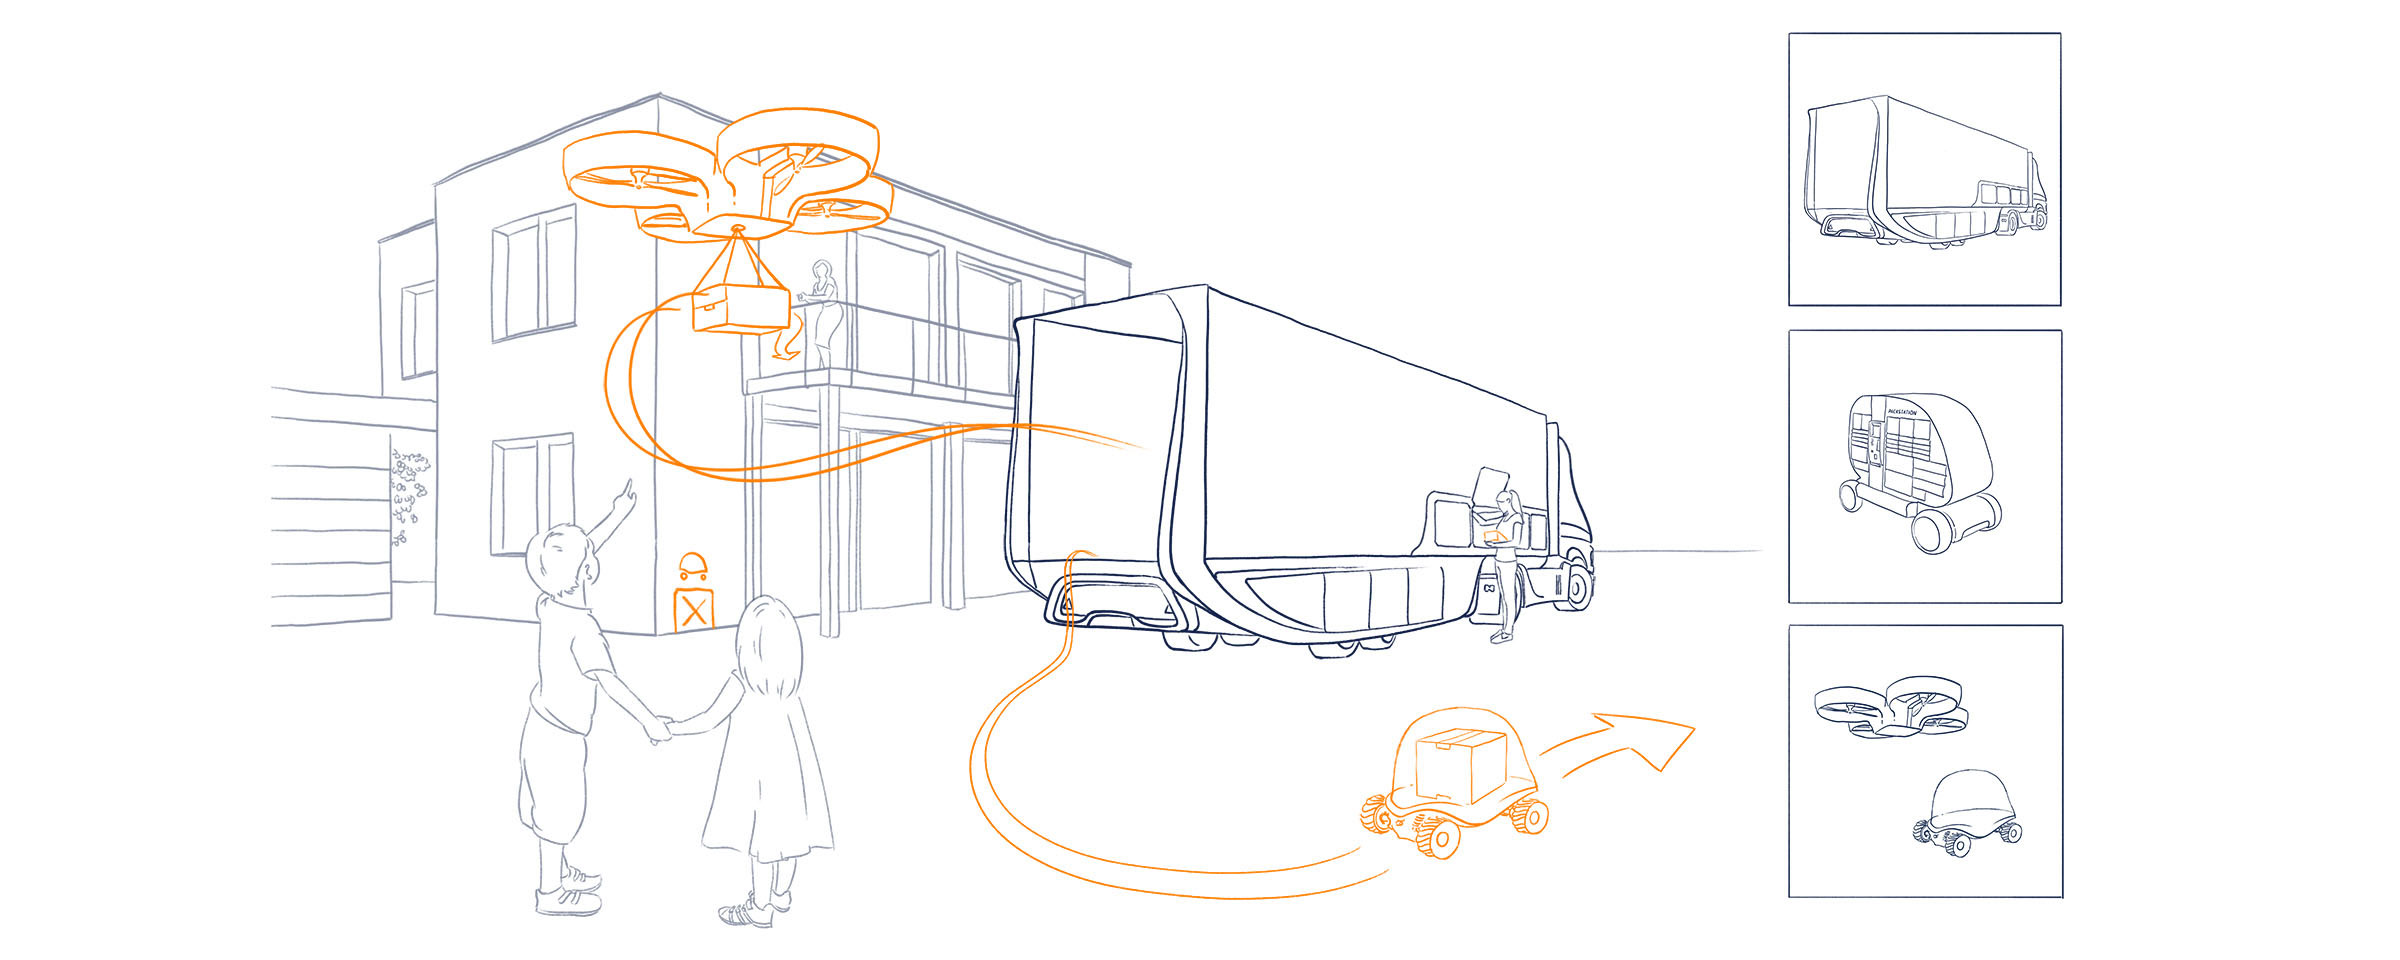 Zeichnung von möglichen Einsätzen von autonomen Transportgeräten im alltäglichen Umfeld